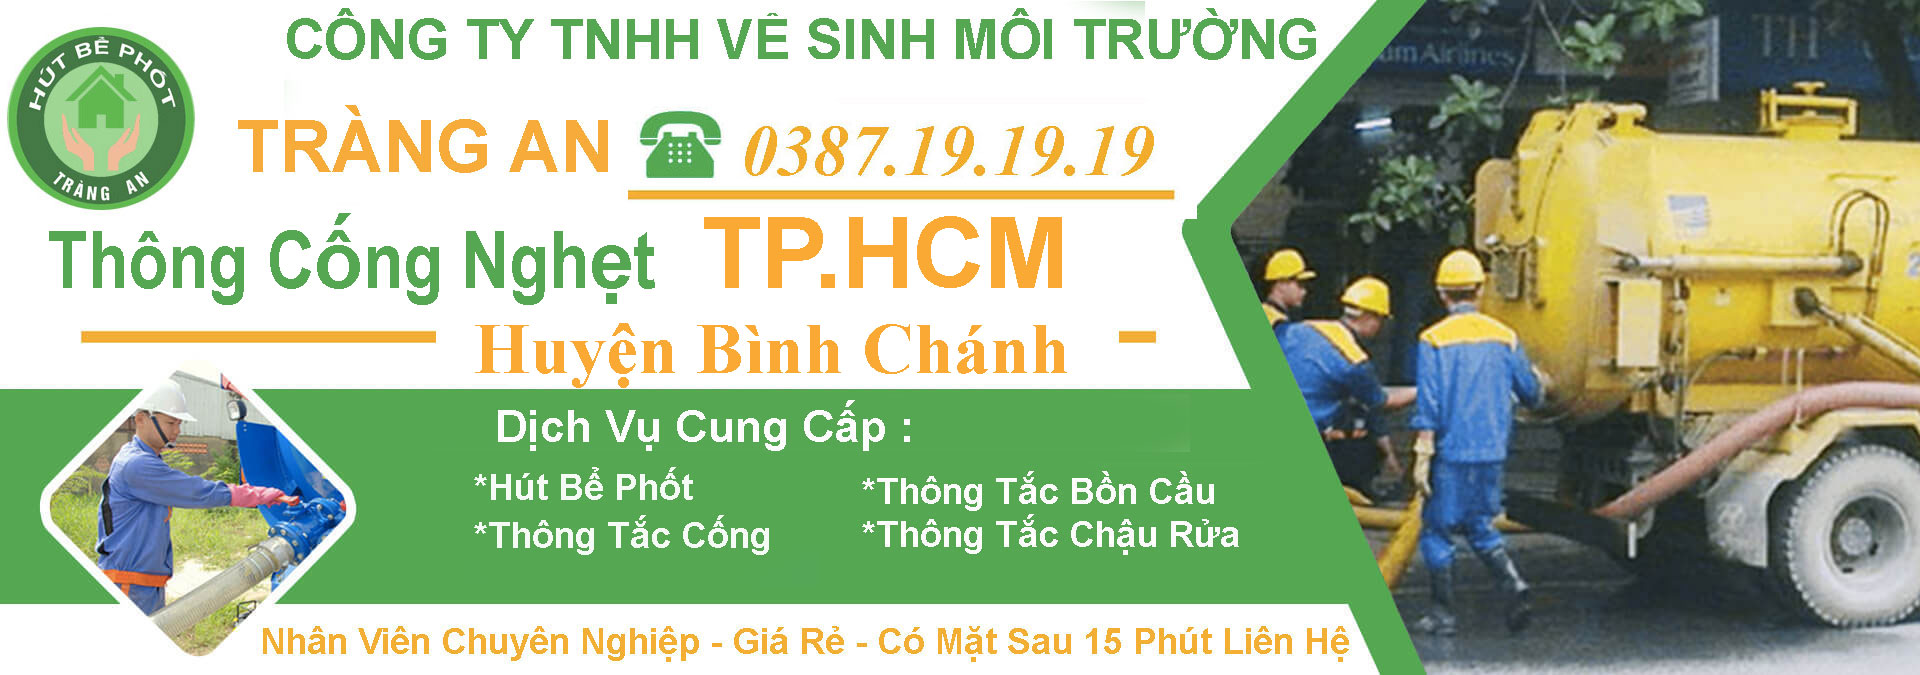 Thong Cong Nghet Tphcm Huyen Binh Chanh